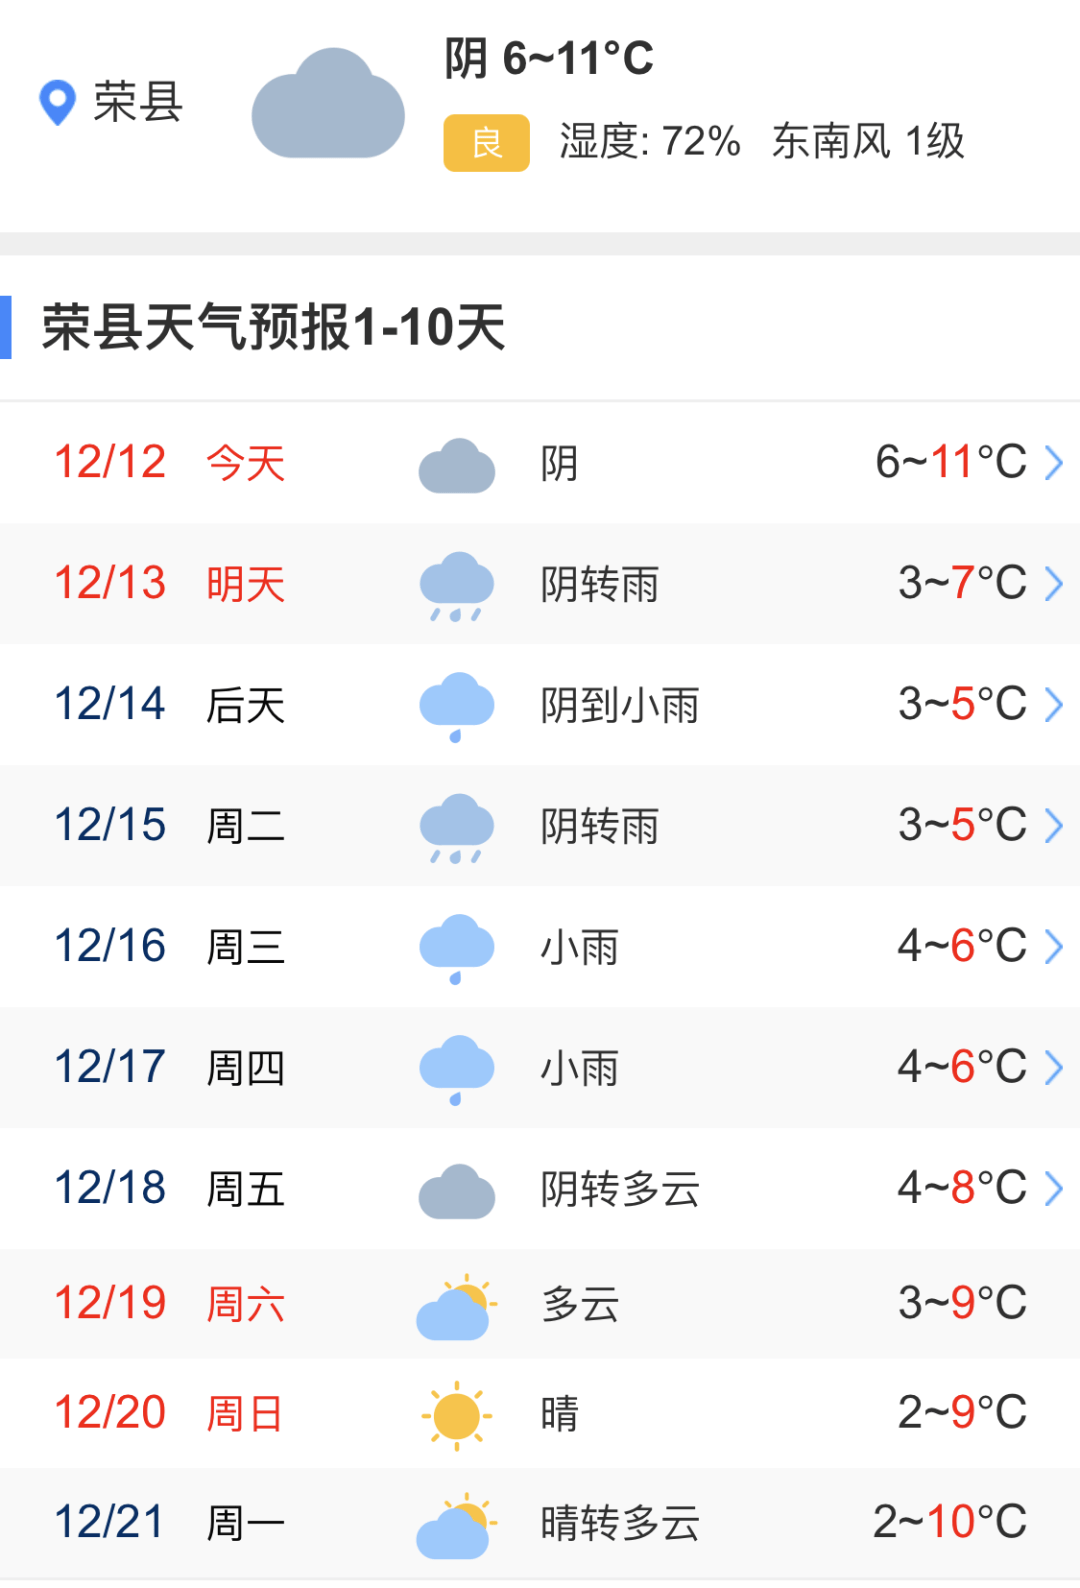 新一波寒流今晚抵达荣县,最低气温逼近0℃,部分地方有雨夹雪